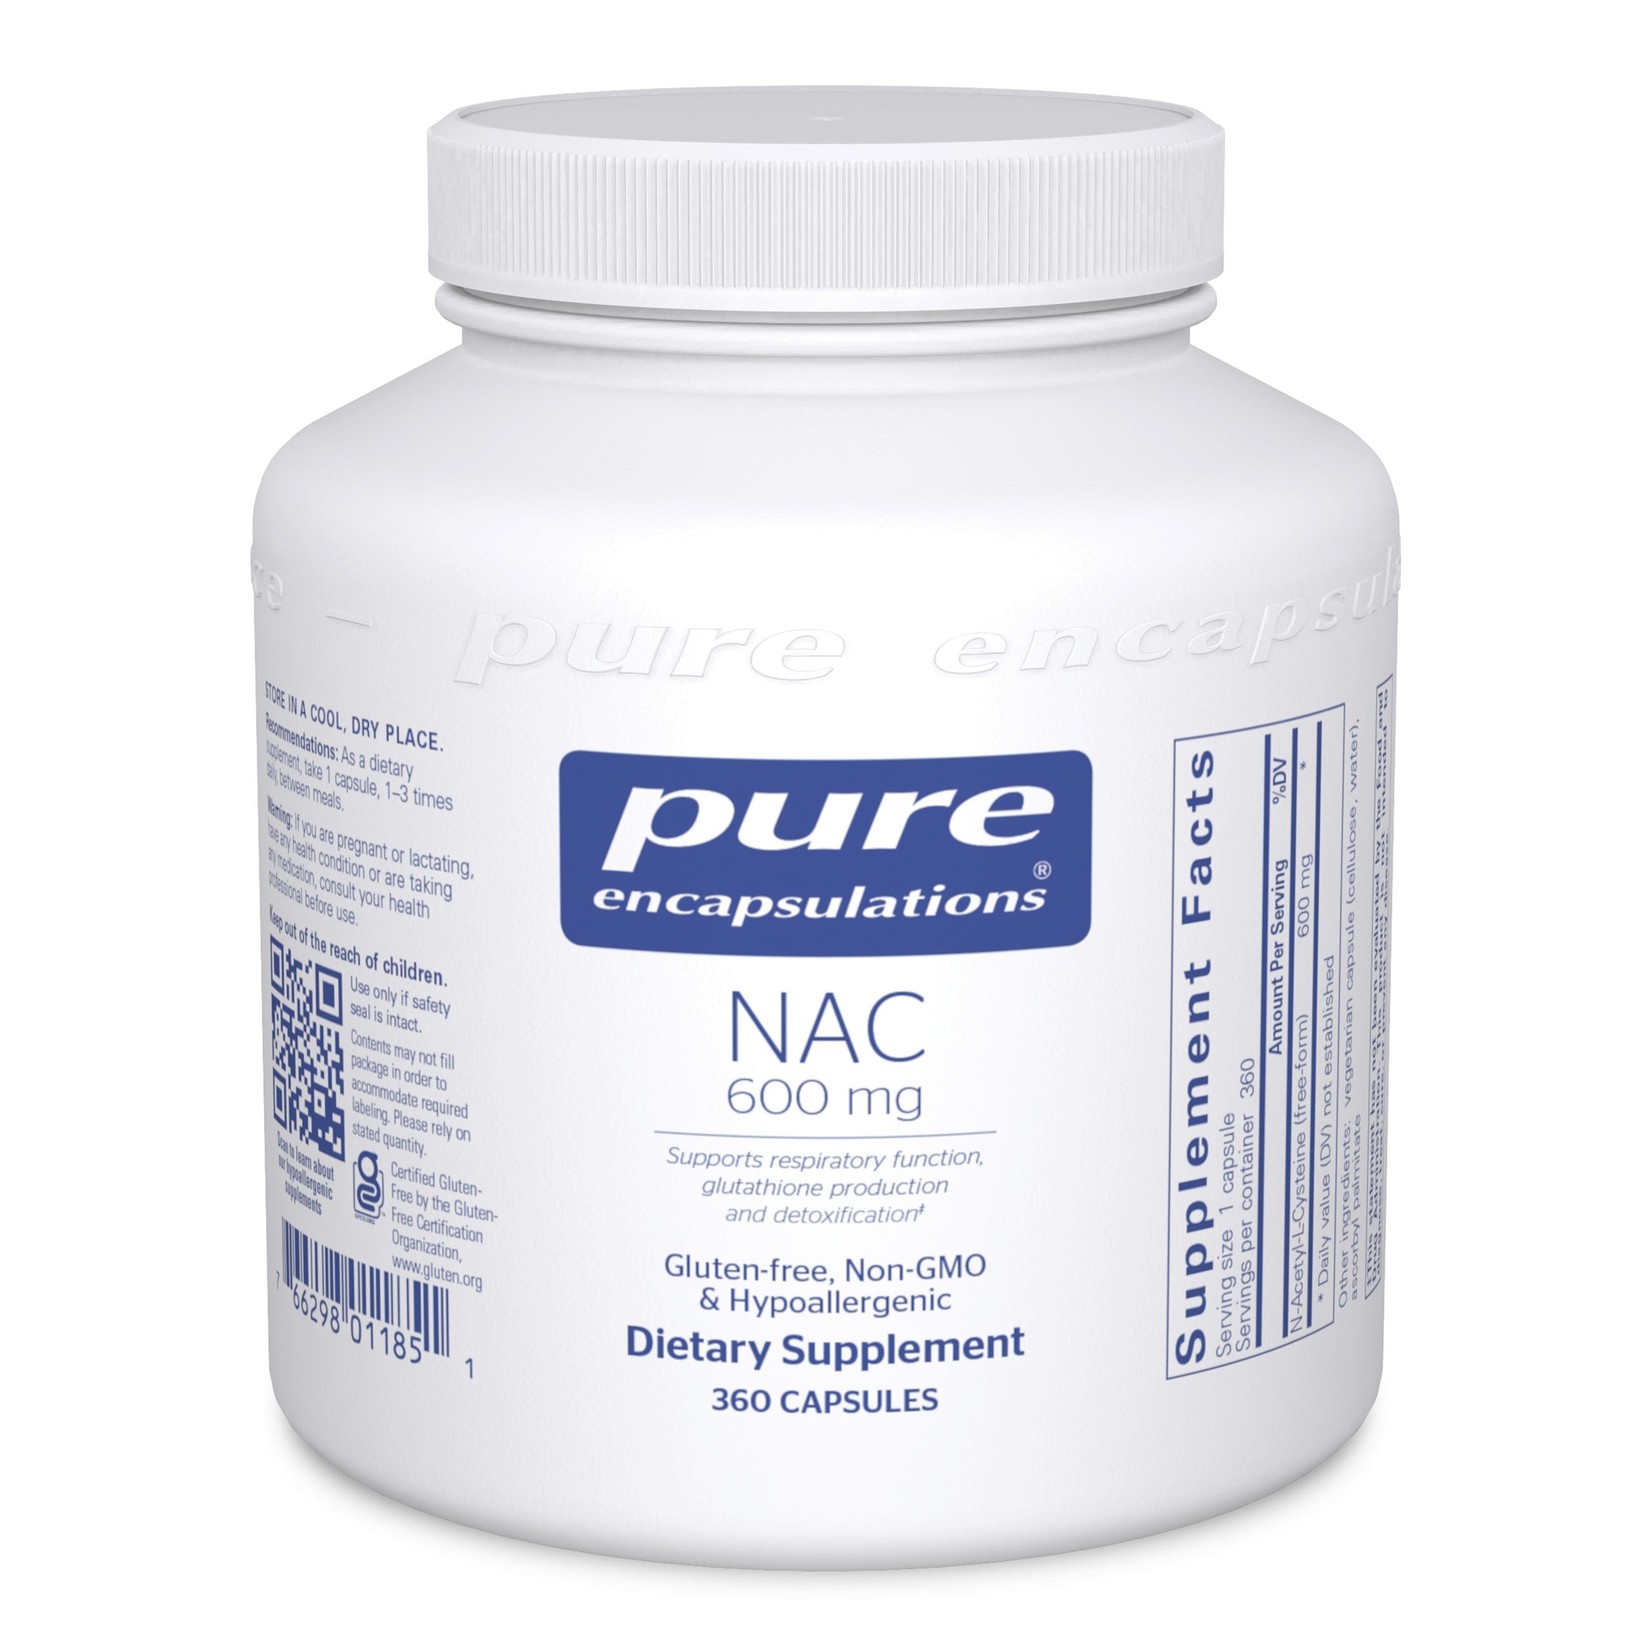 Pure Encapsulations Pure Encapsulations - Nac 600 mg - 360 Capsules